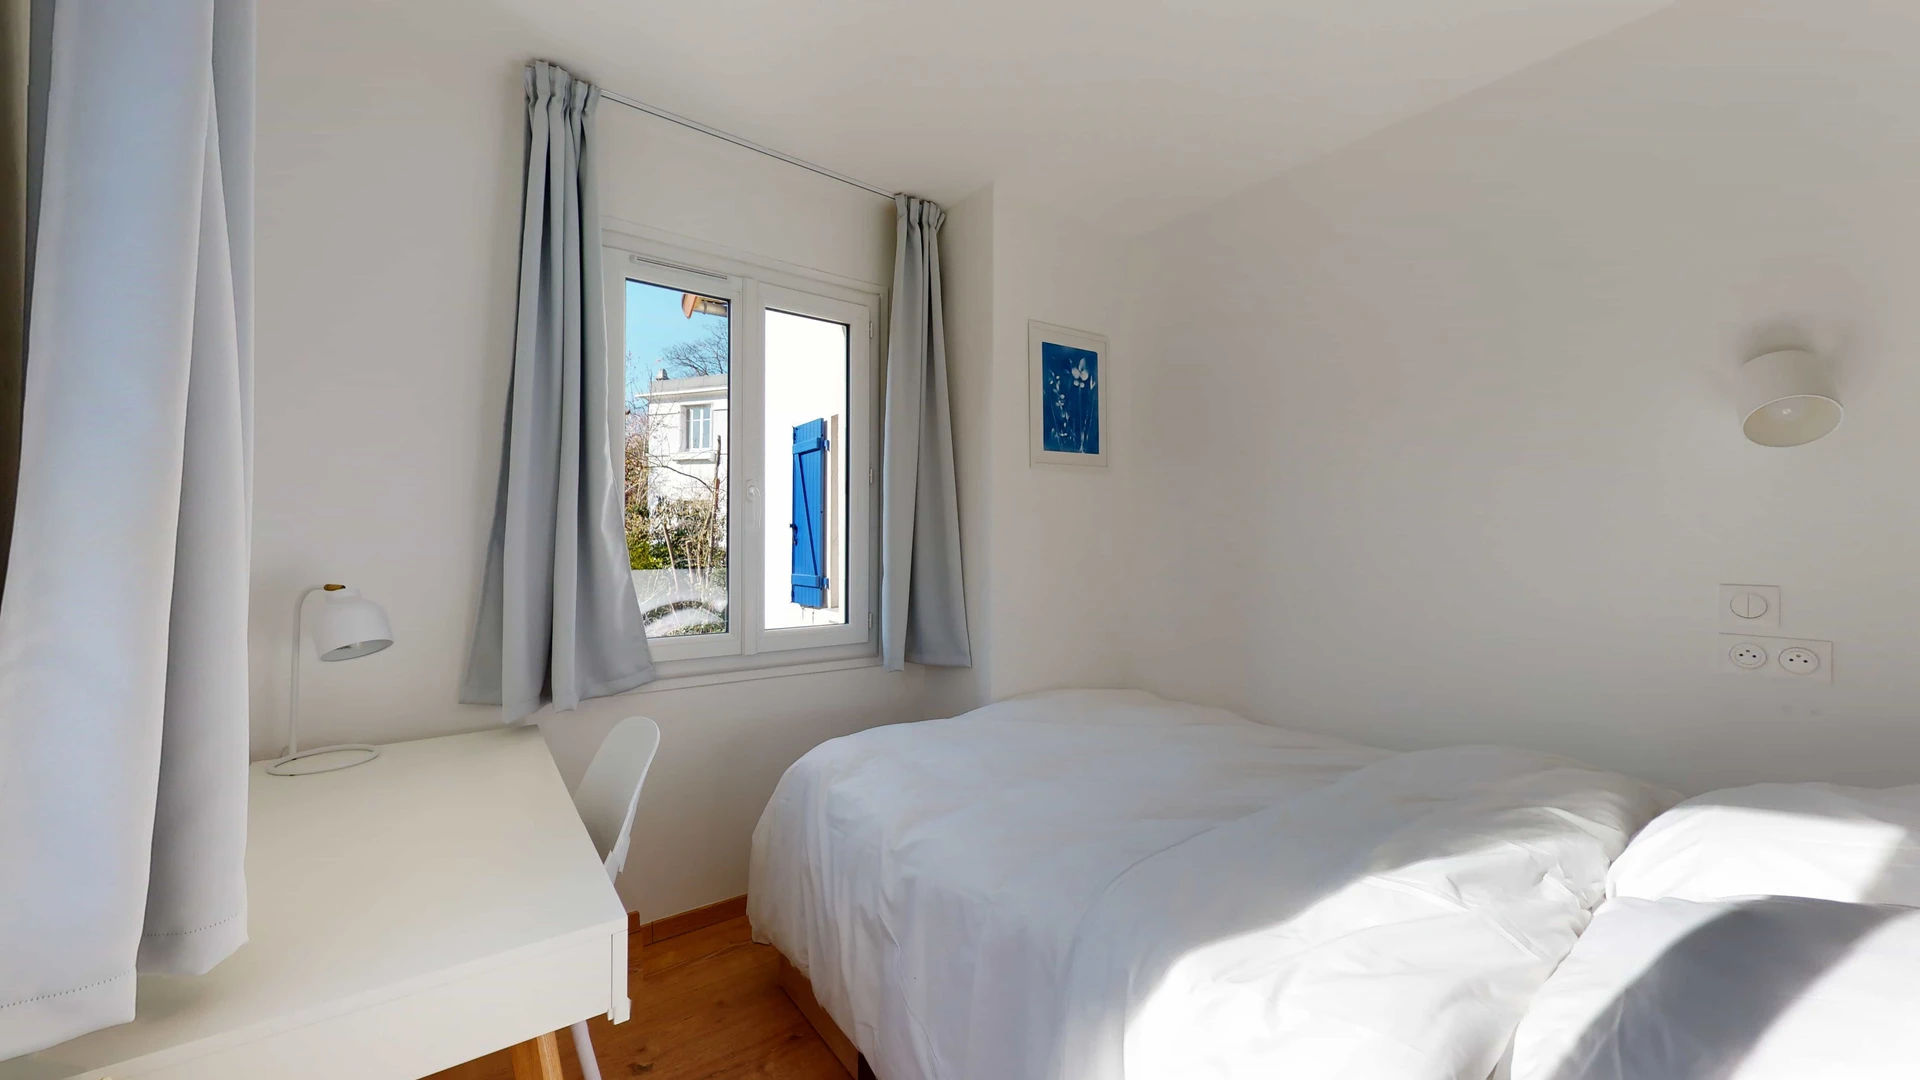 Picture of Private room at 75 boulevard du Maréchal de Lattre de Tassigny